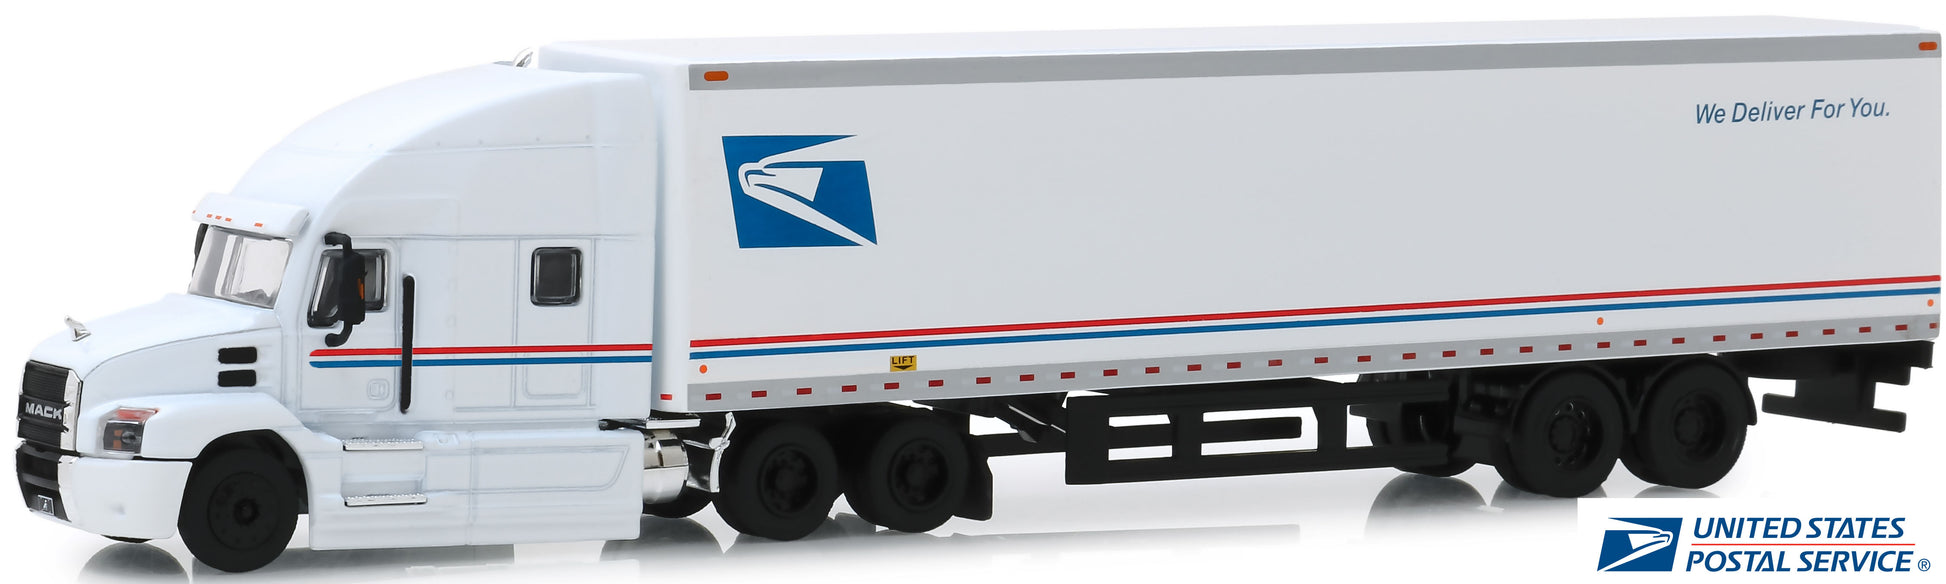 2019 Mack Anthem w/45' Dry Van "USPS - United States Postal Service" (White)